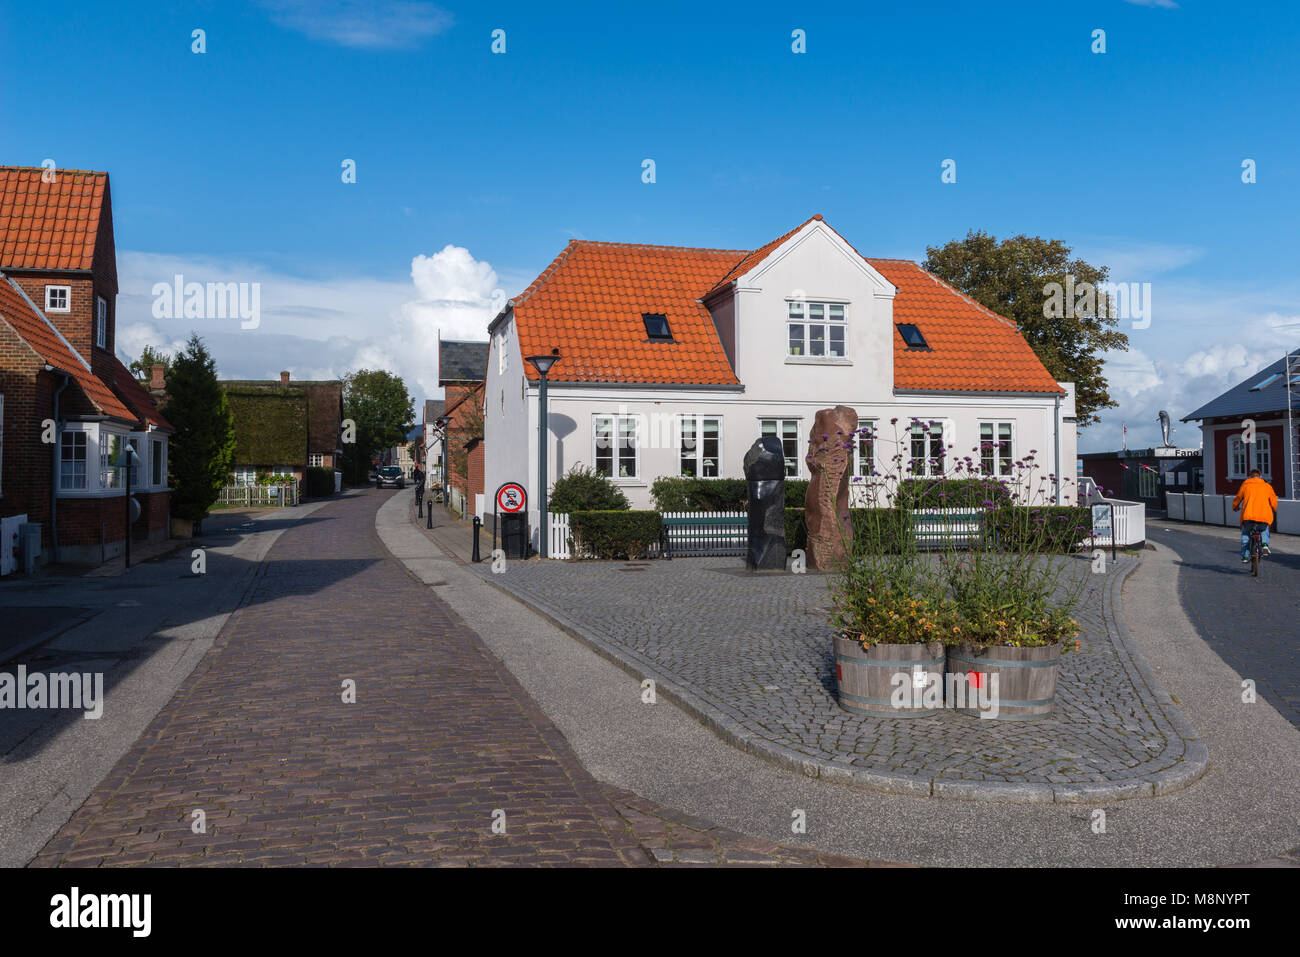 Cobble stone street dans le centre-ville, dans des maisons typiquement danois Nordby, île d'adresses importantes Tidevand Færgeruter Lufthavne Bil, Jutland, Danemark, Scandinavie Banque D'Images